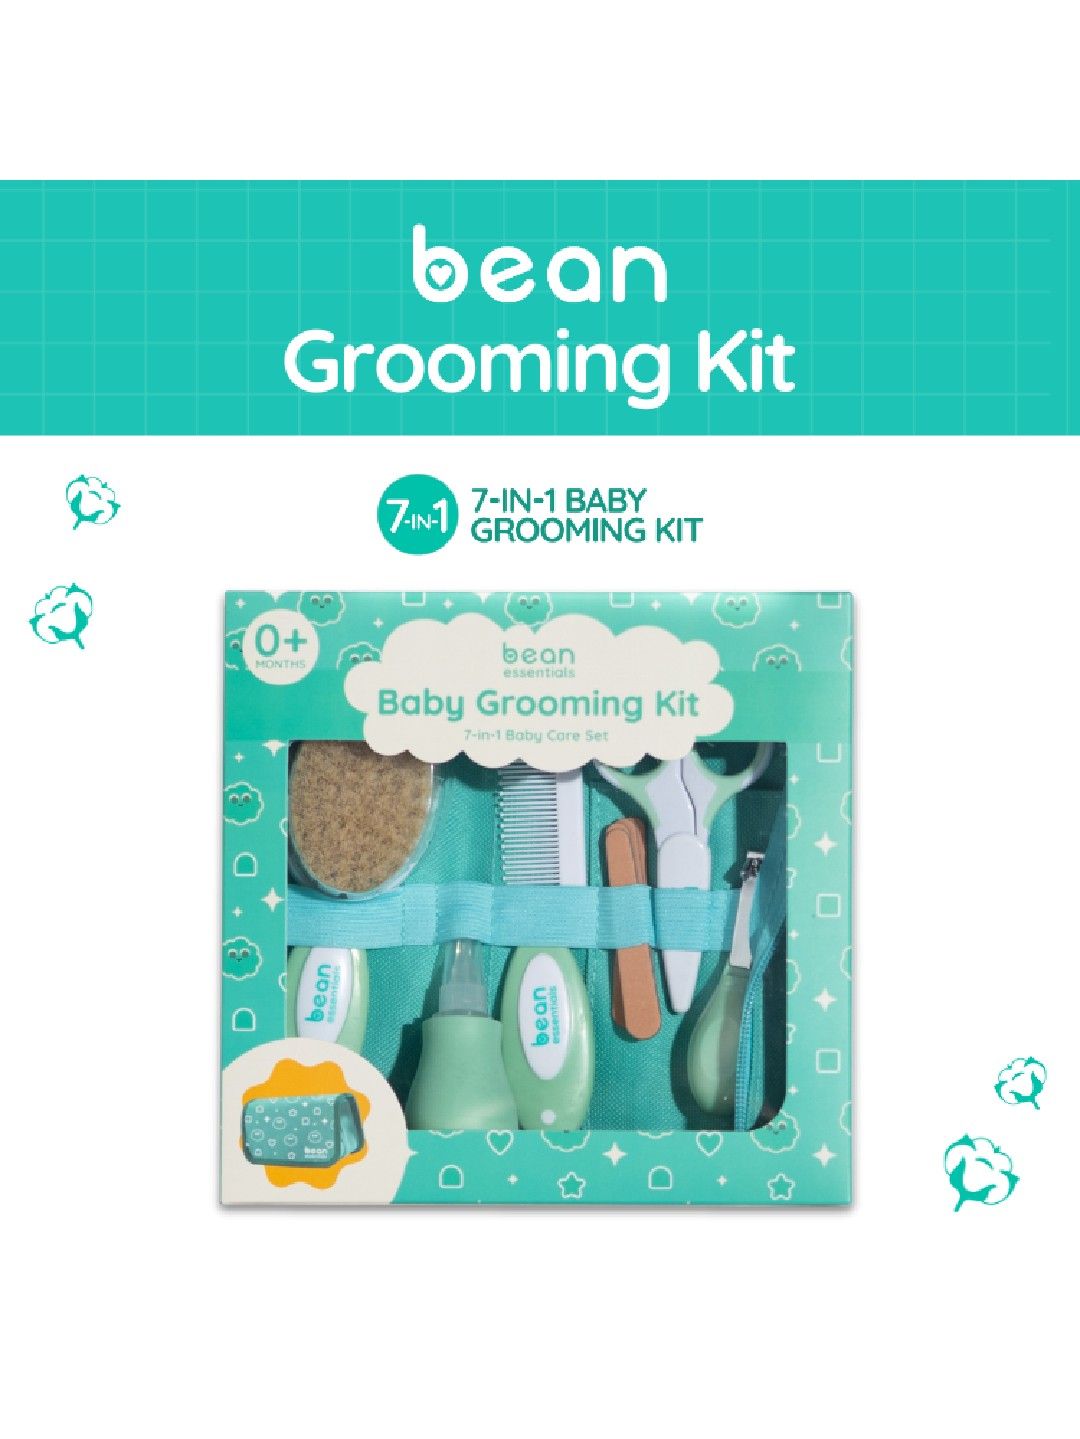 bean essentials Baby Grooming Kit